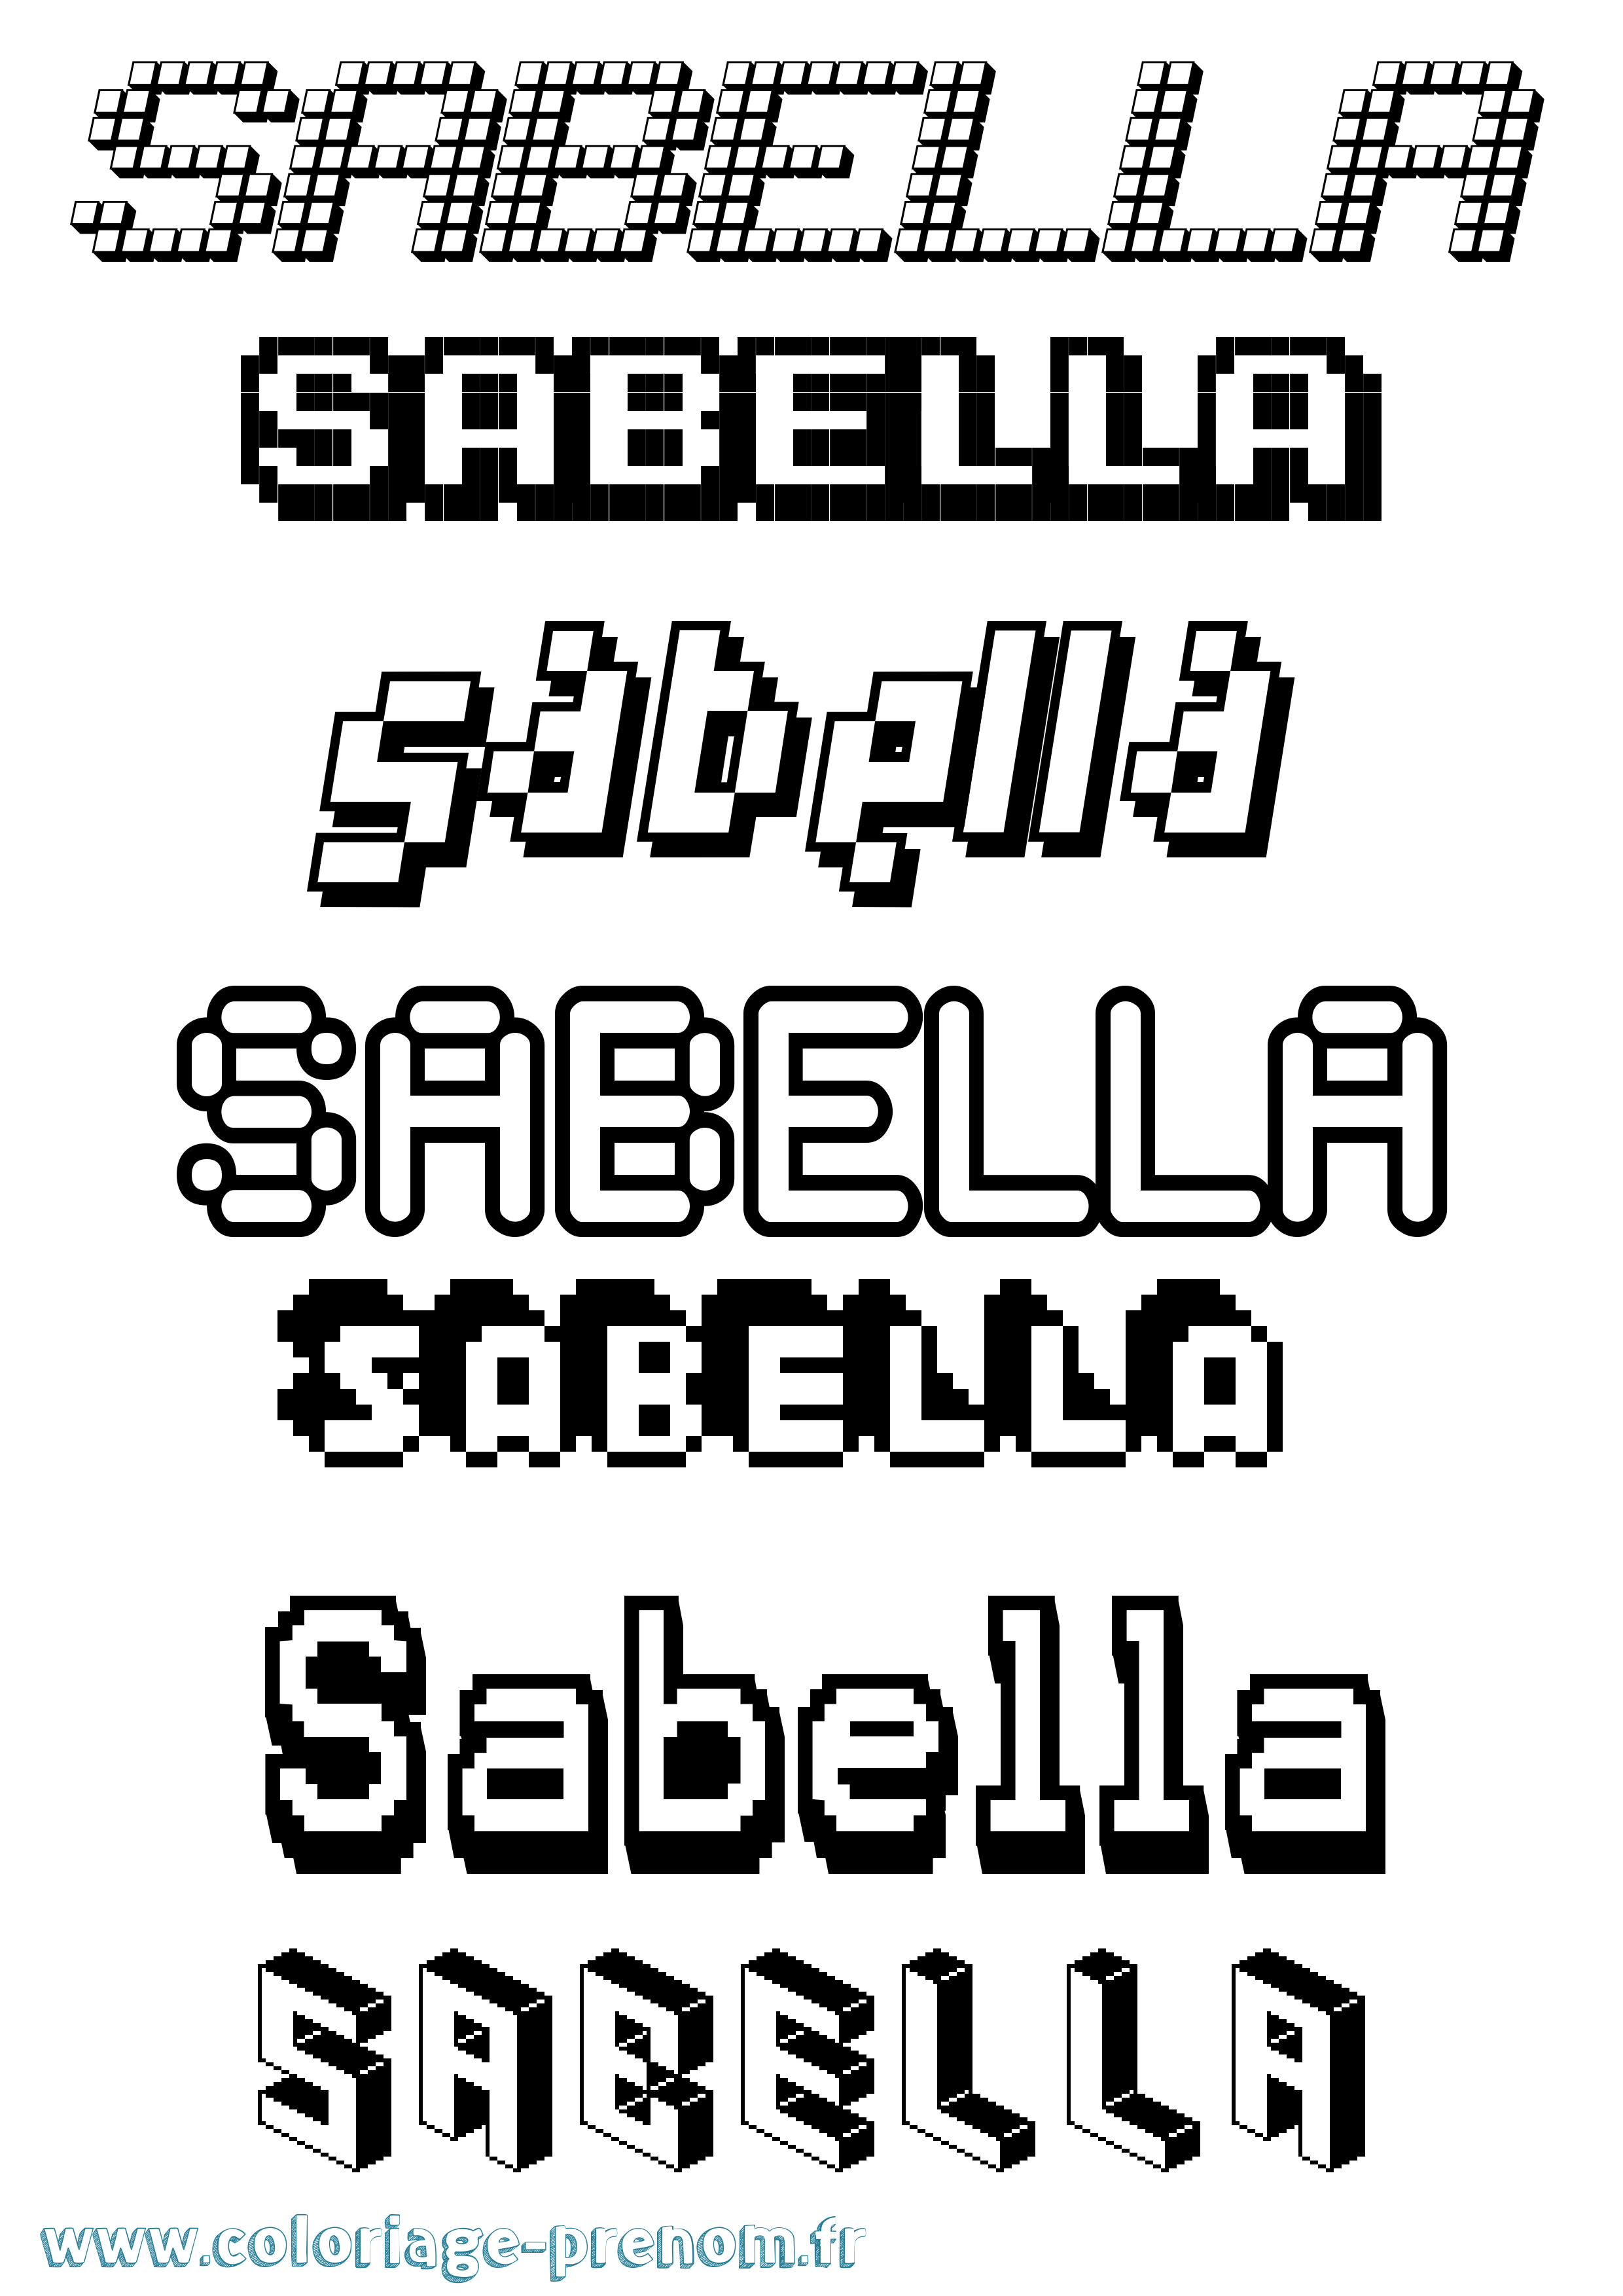 Coloriage prénom Sabella Pixel